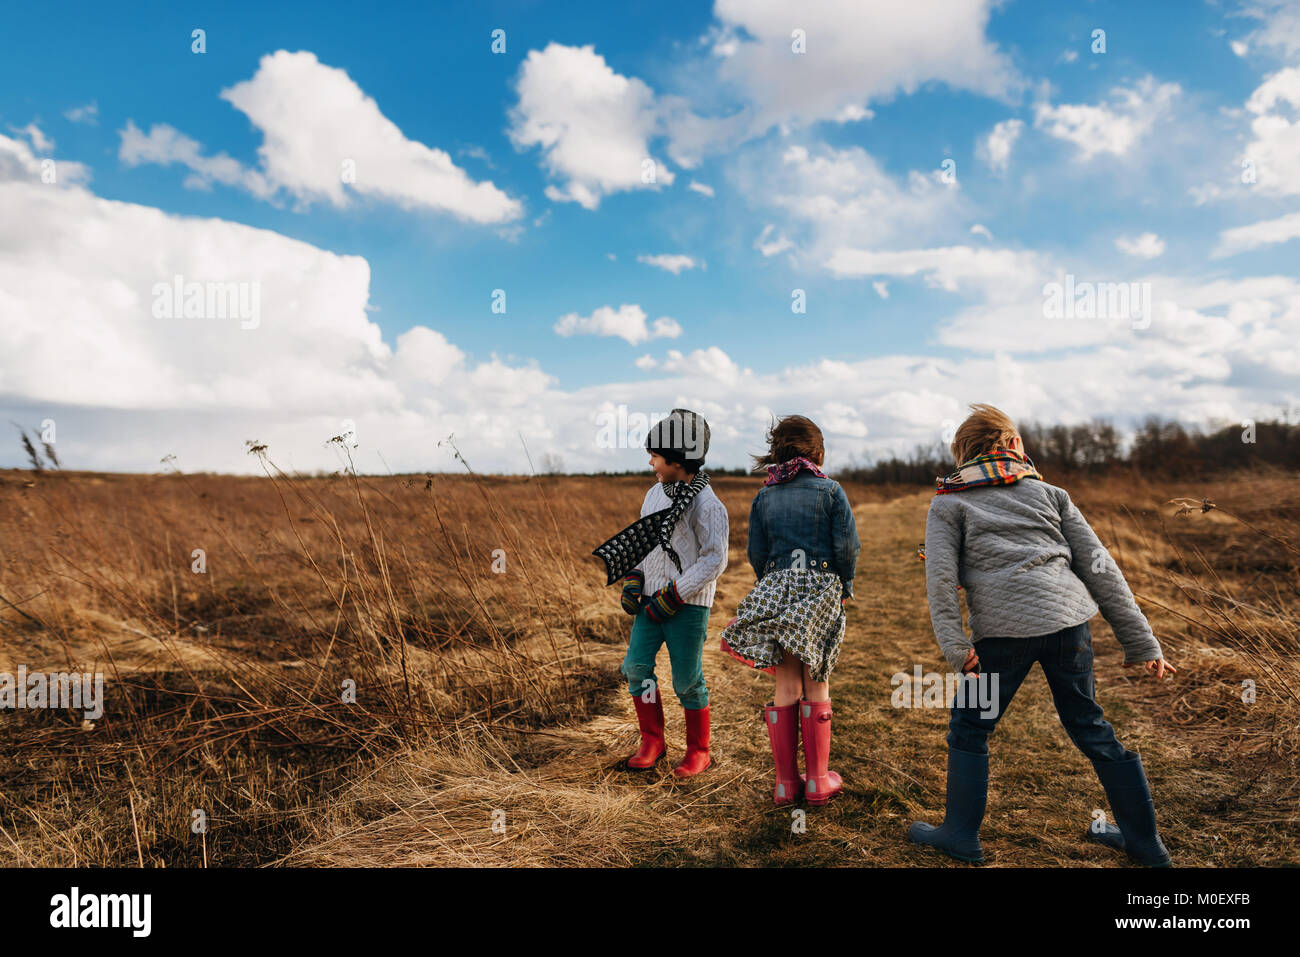 Tres niños de pie en un paisaje rural en un día ventoso Foto de stock